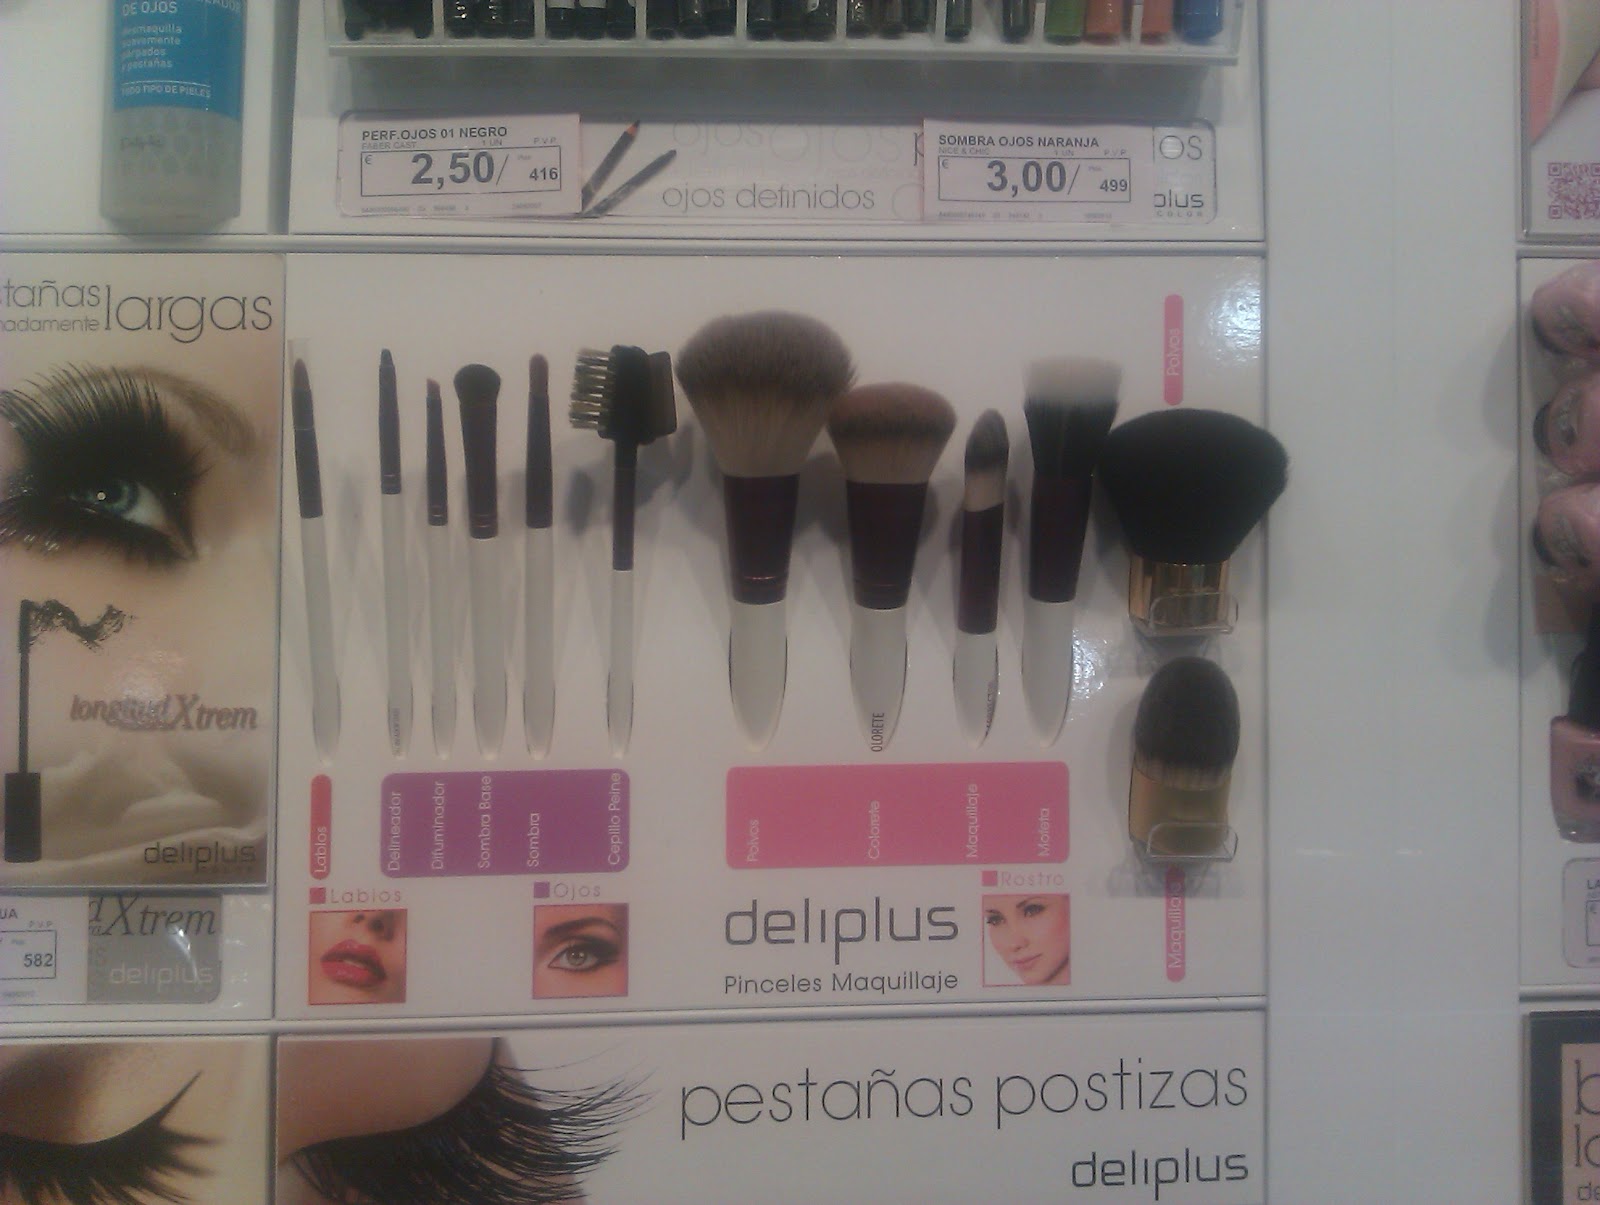 Nuevas brochas maquillaje Deliplus Mercadona La belleza